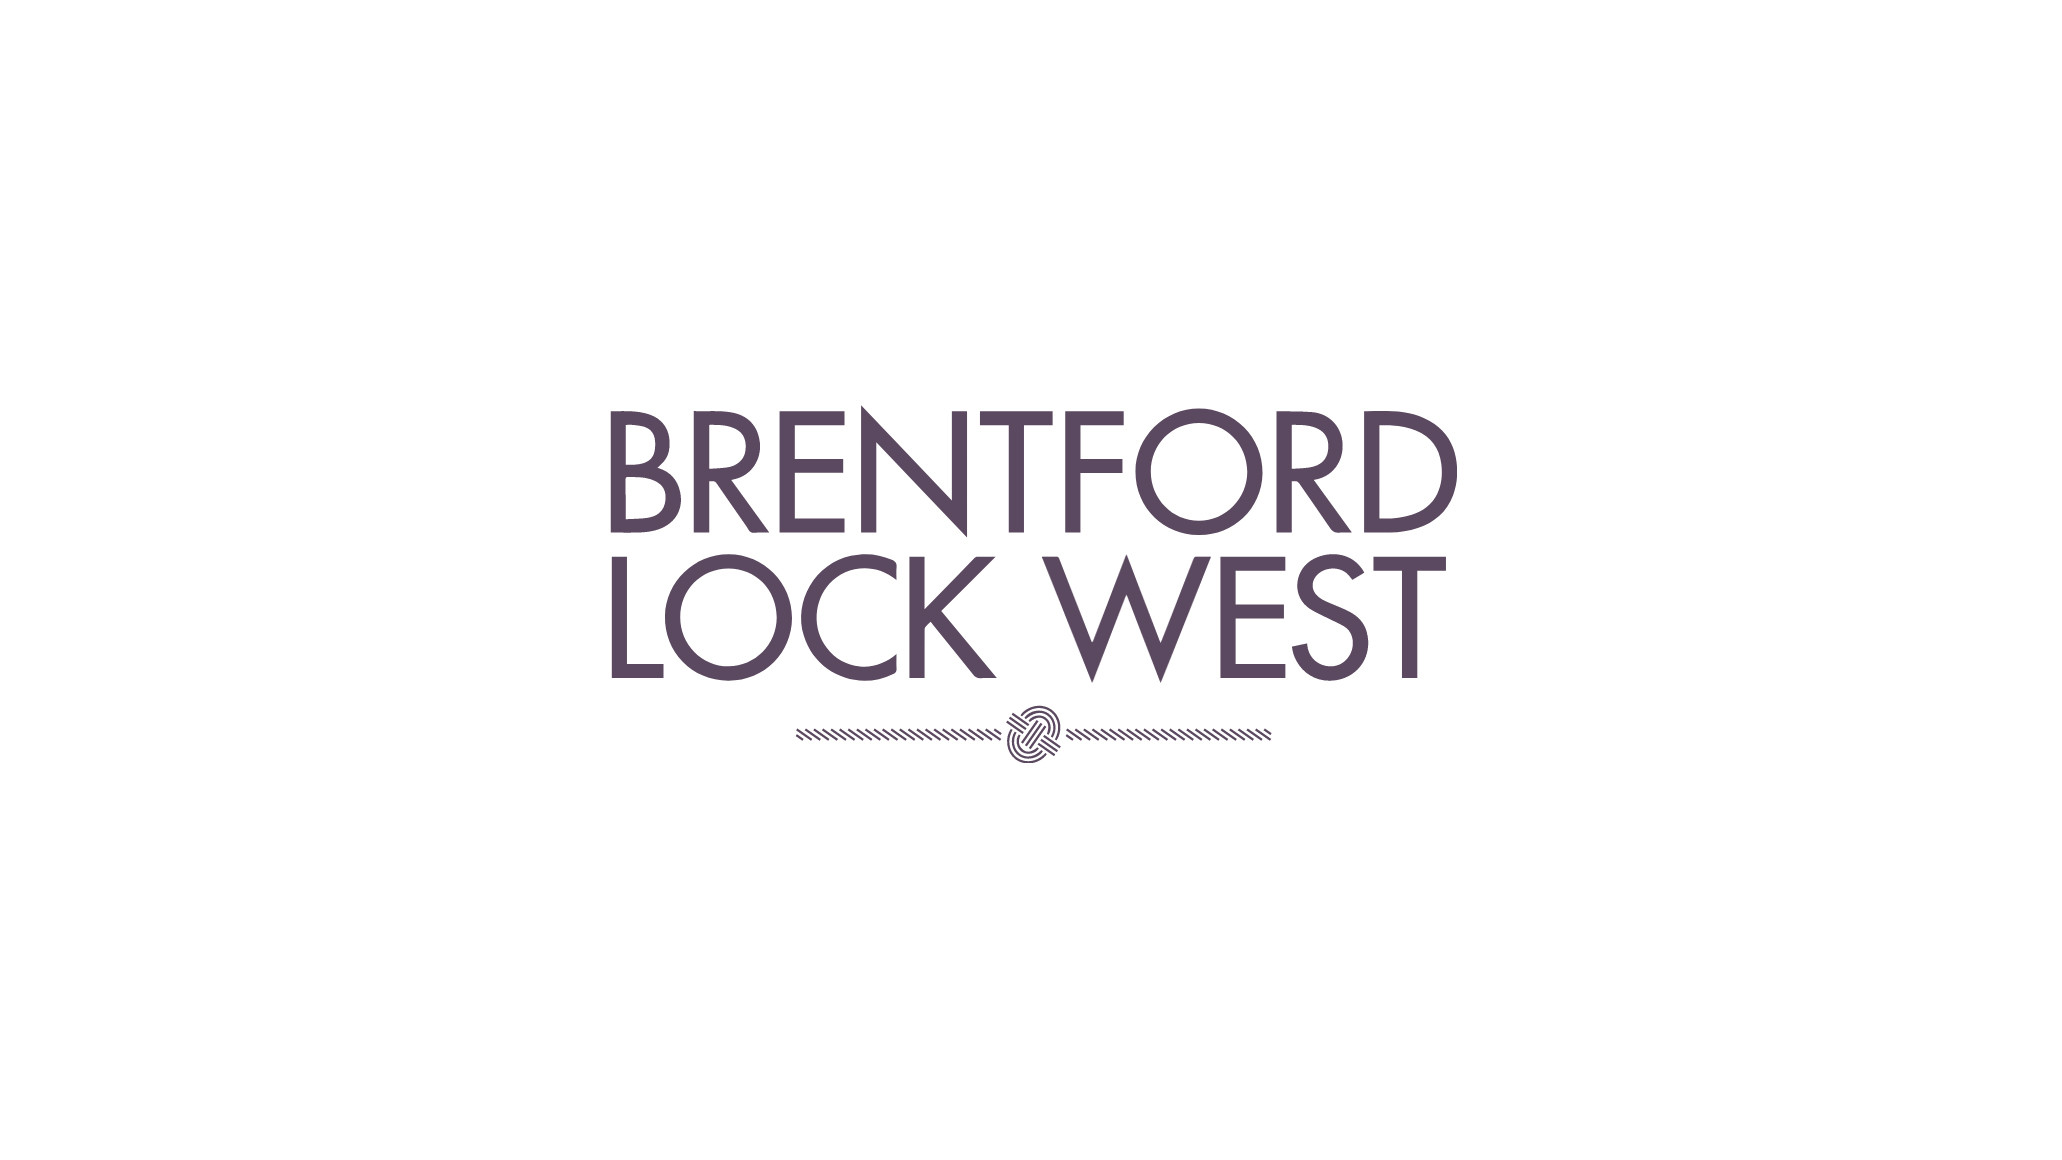 Brentford Lock West development logo.